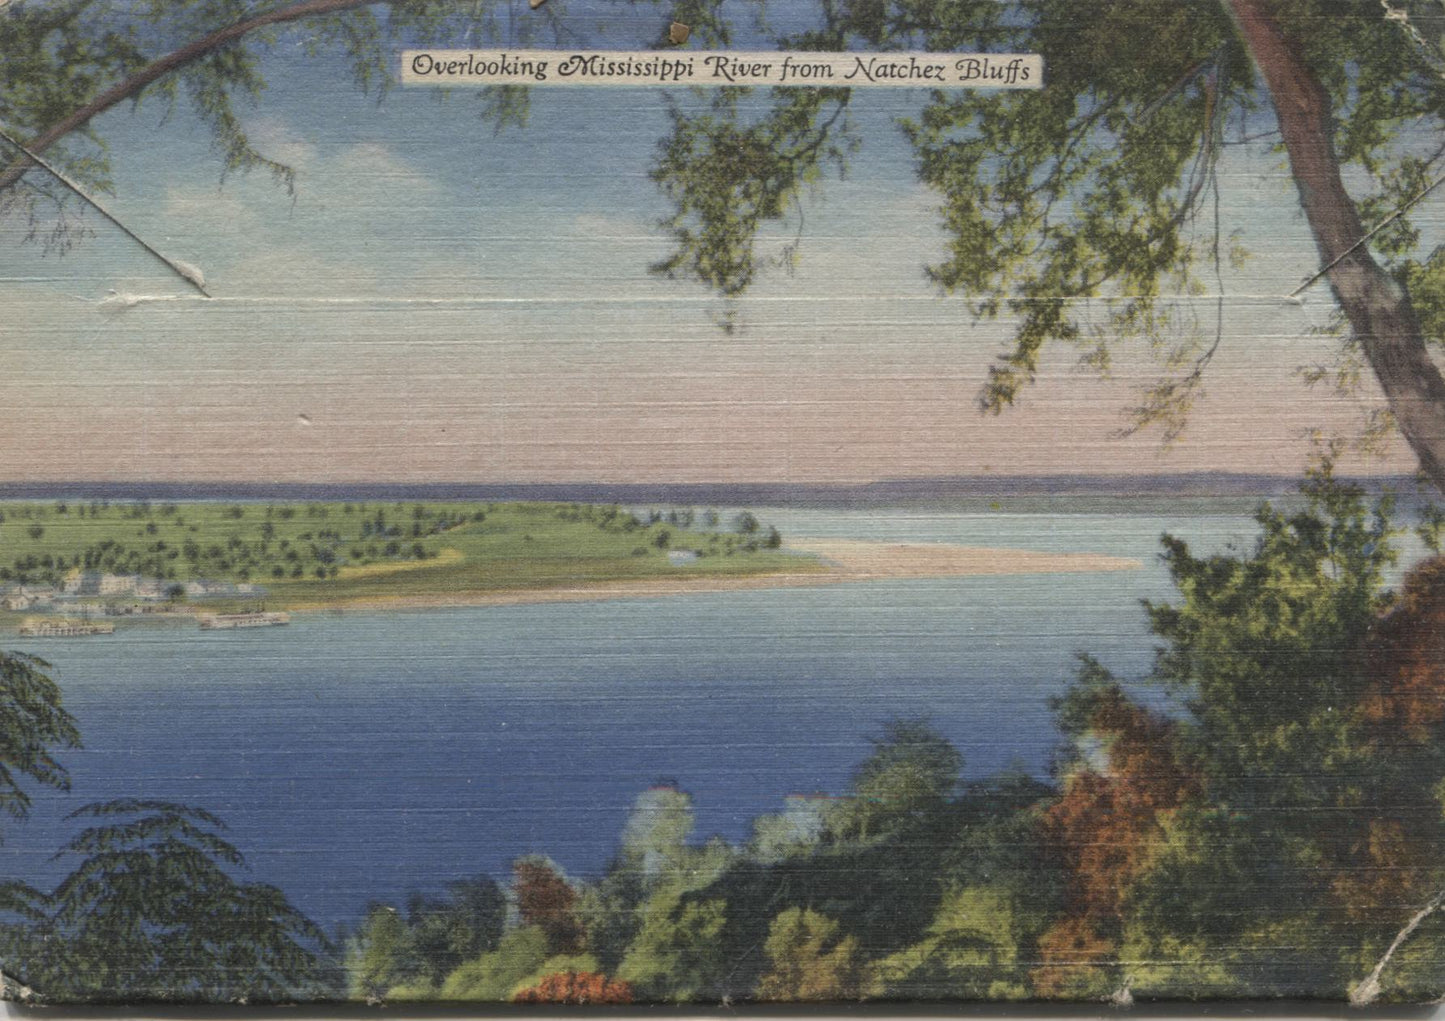 Natchez, Mississippi Vintage Souvenir Postcard Folder